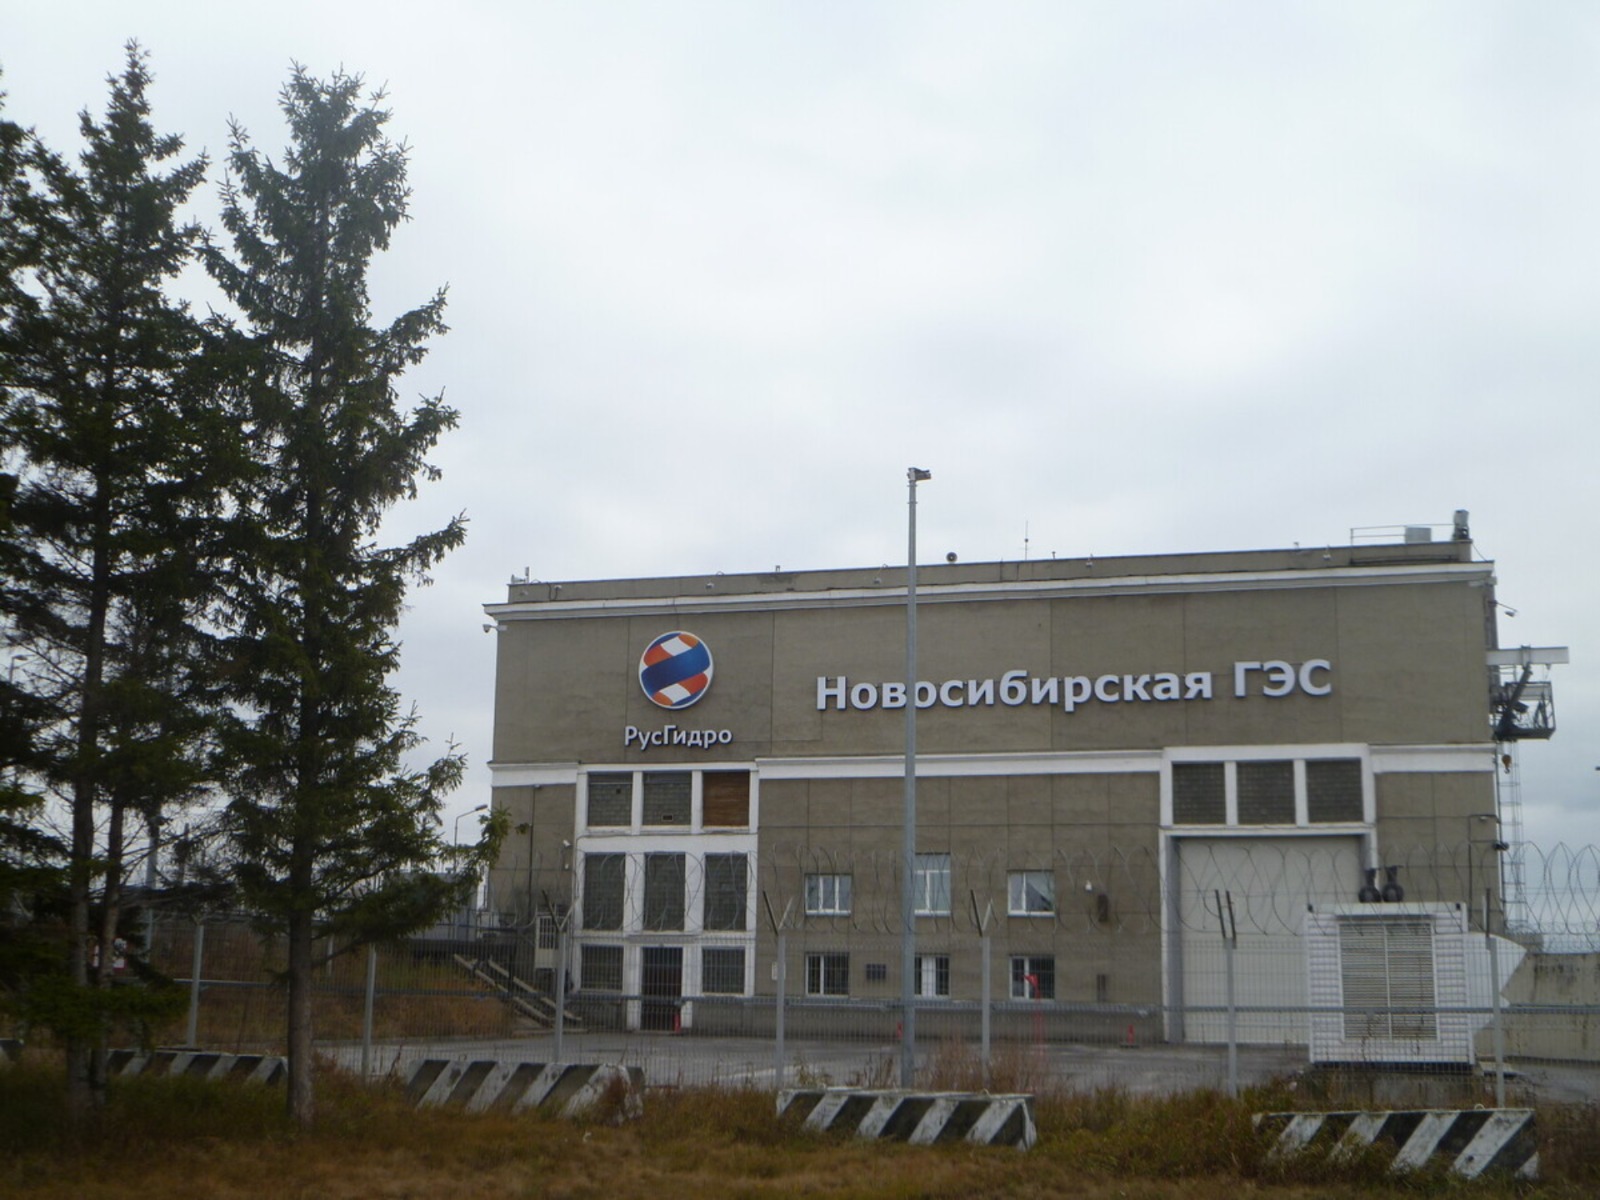 Новосибирская ГЭС  